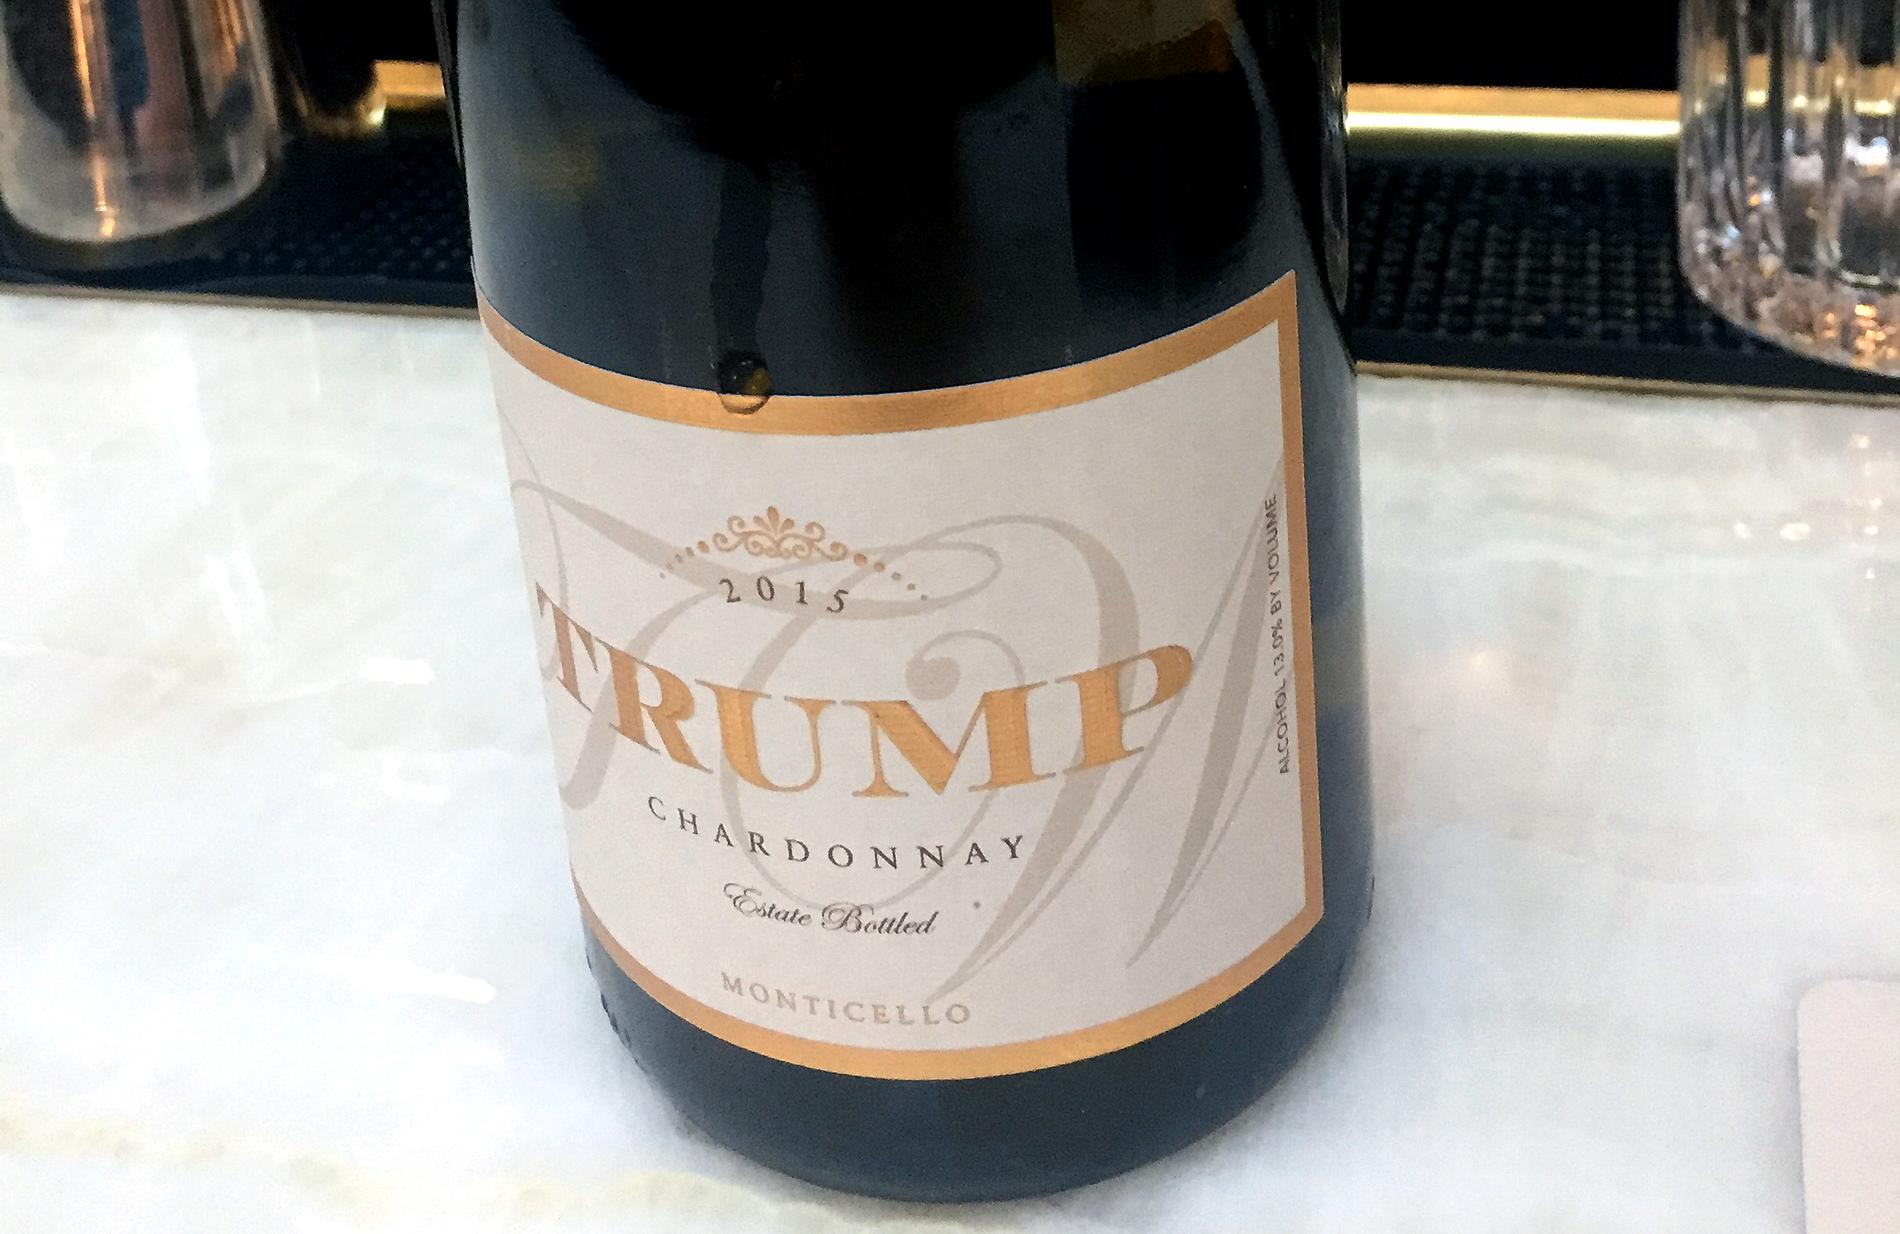 Trump Chardonnay